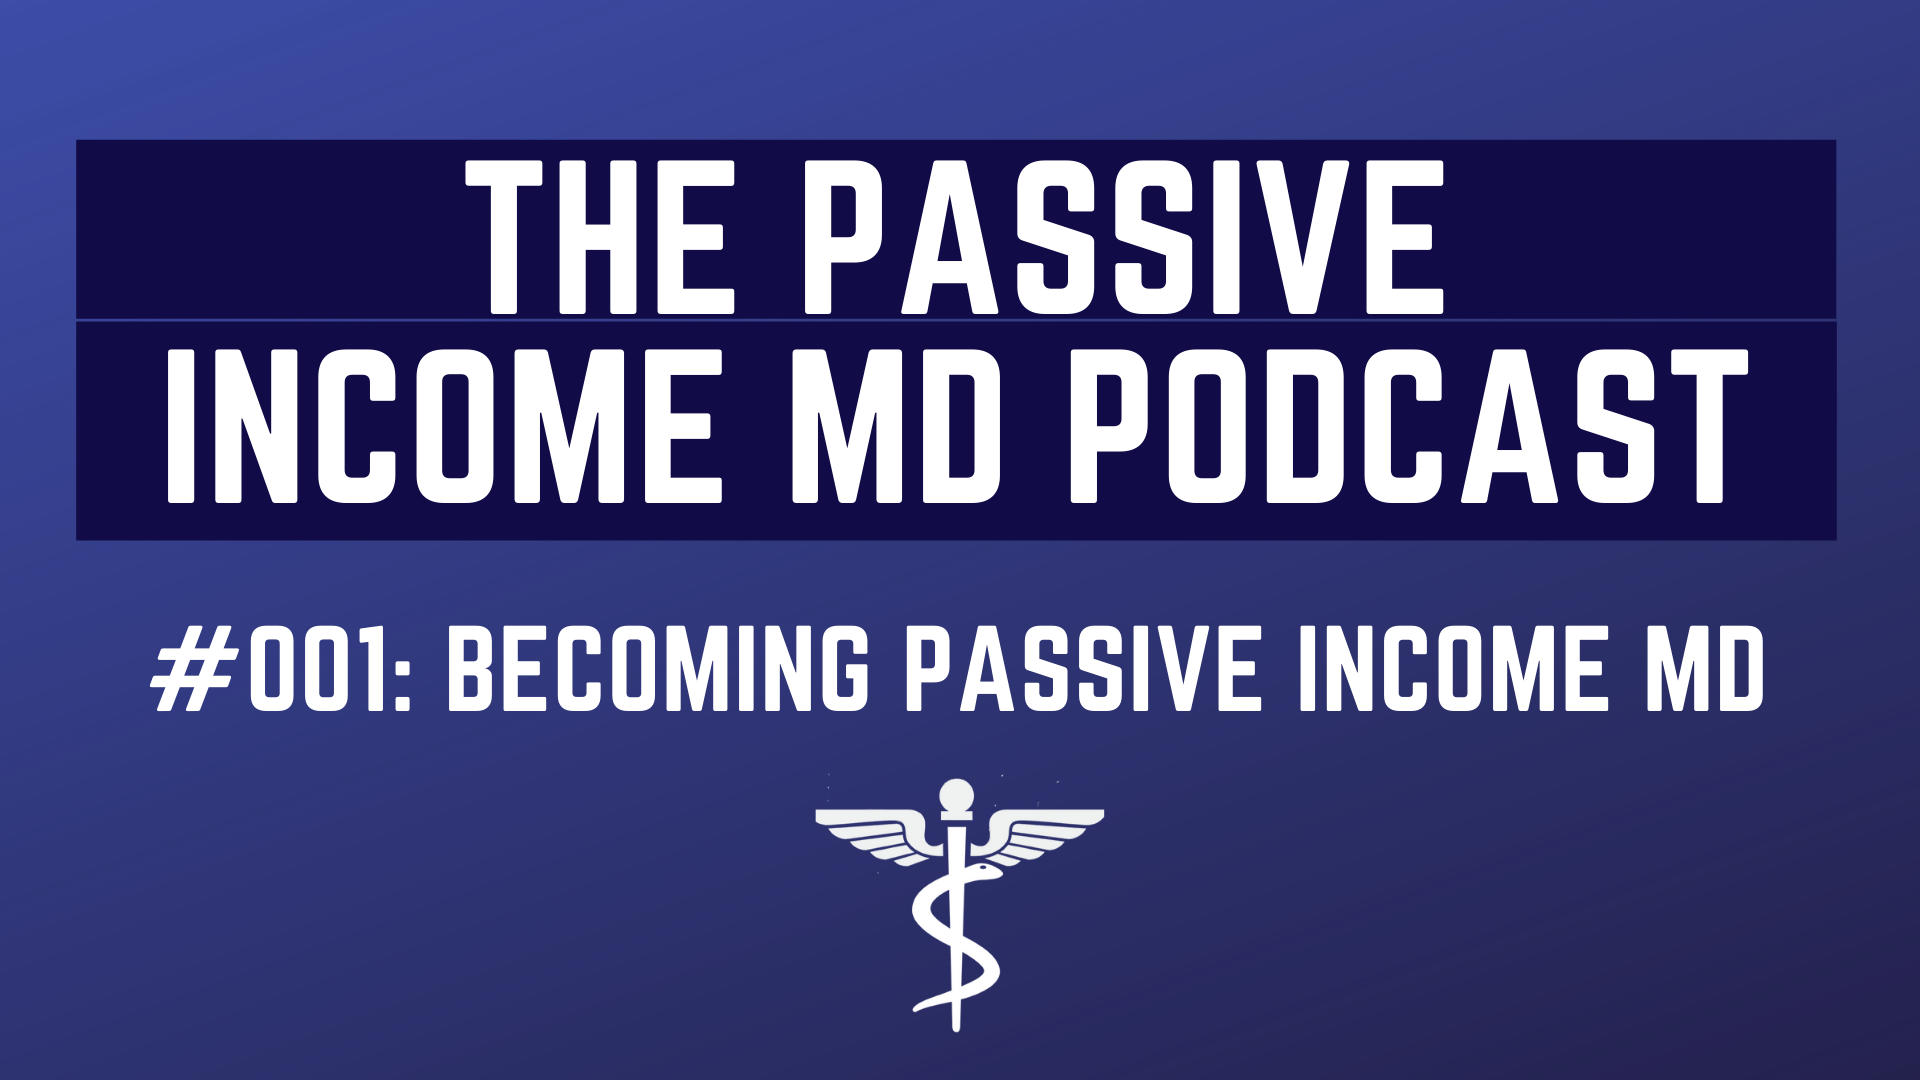 The Passive Income MD Podcast